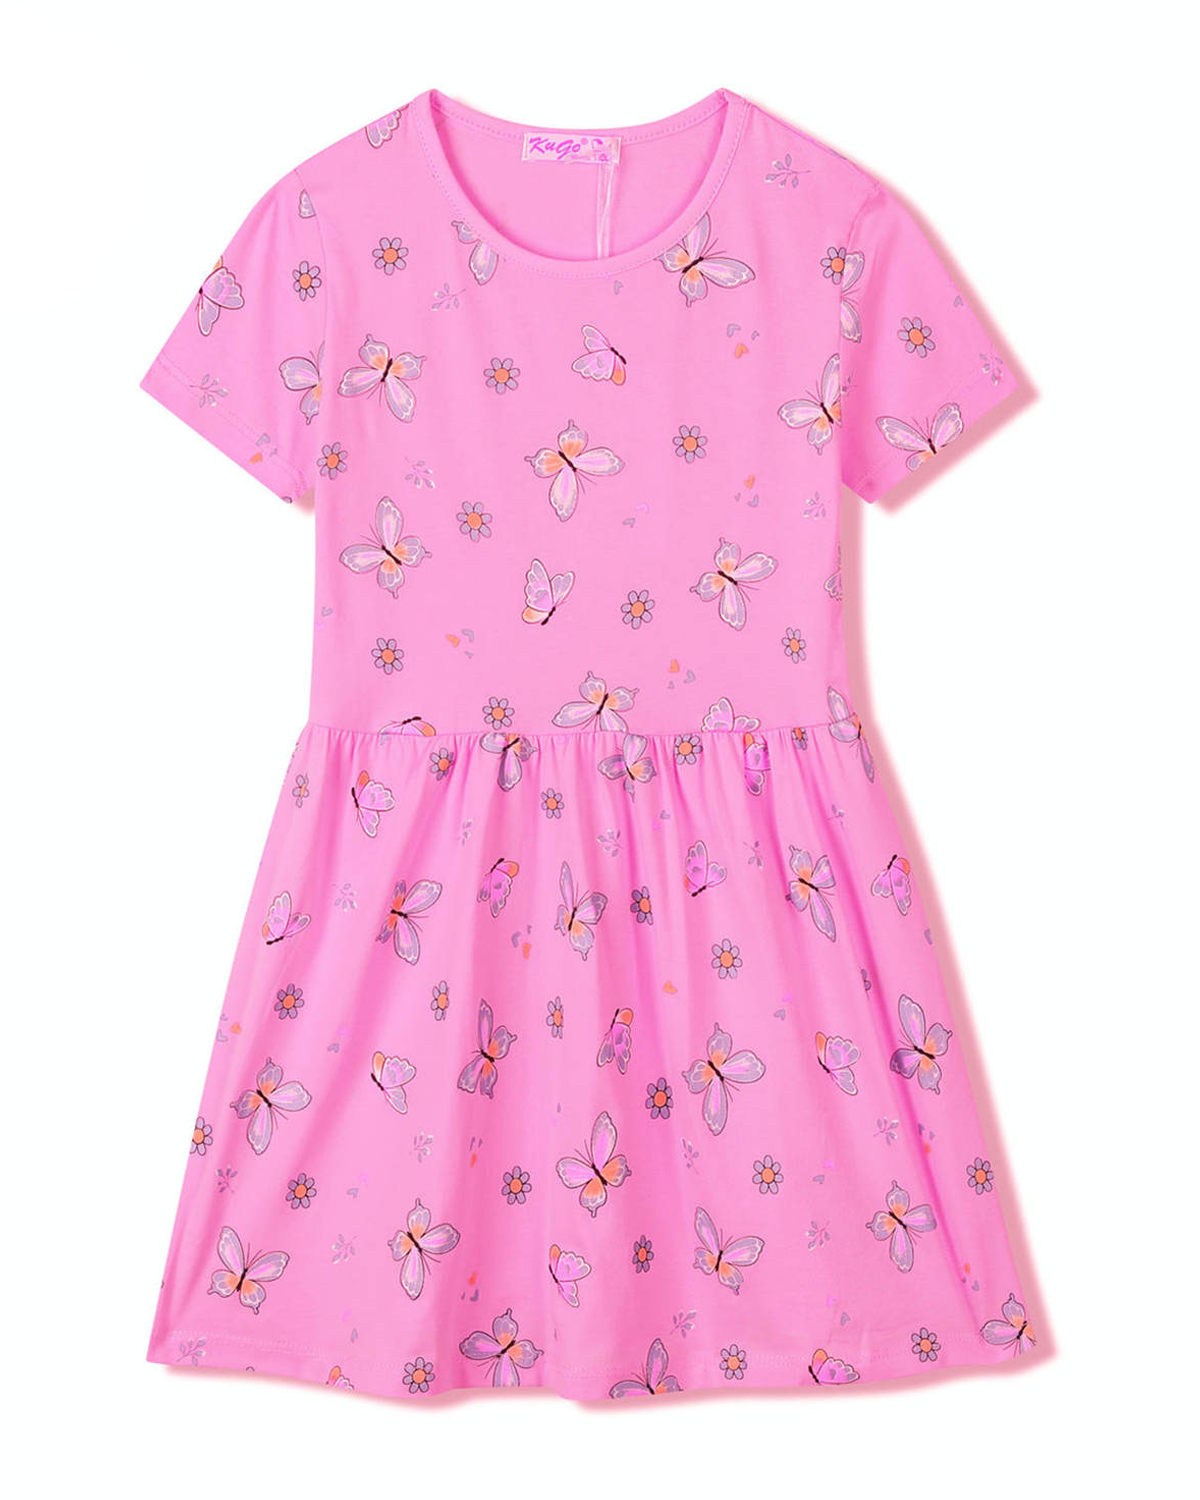 Dívčí šaty - KUGO SH3516, sytě růžová Barva: Růžová, Velikost: 98